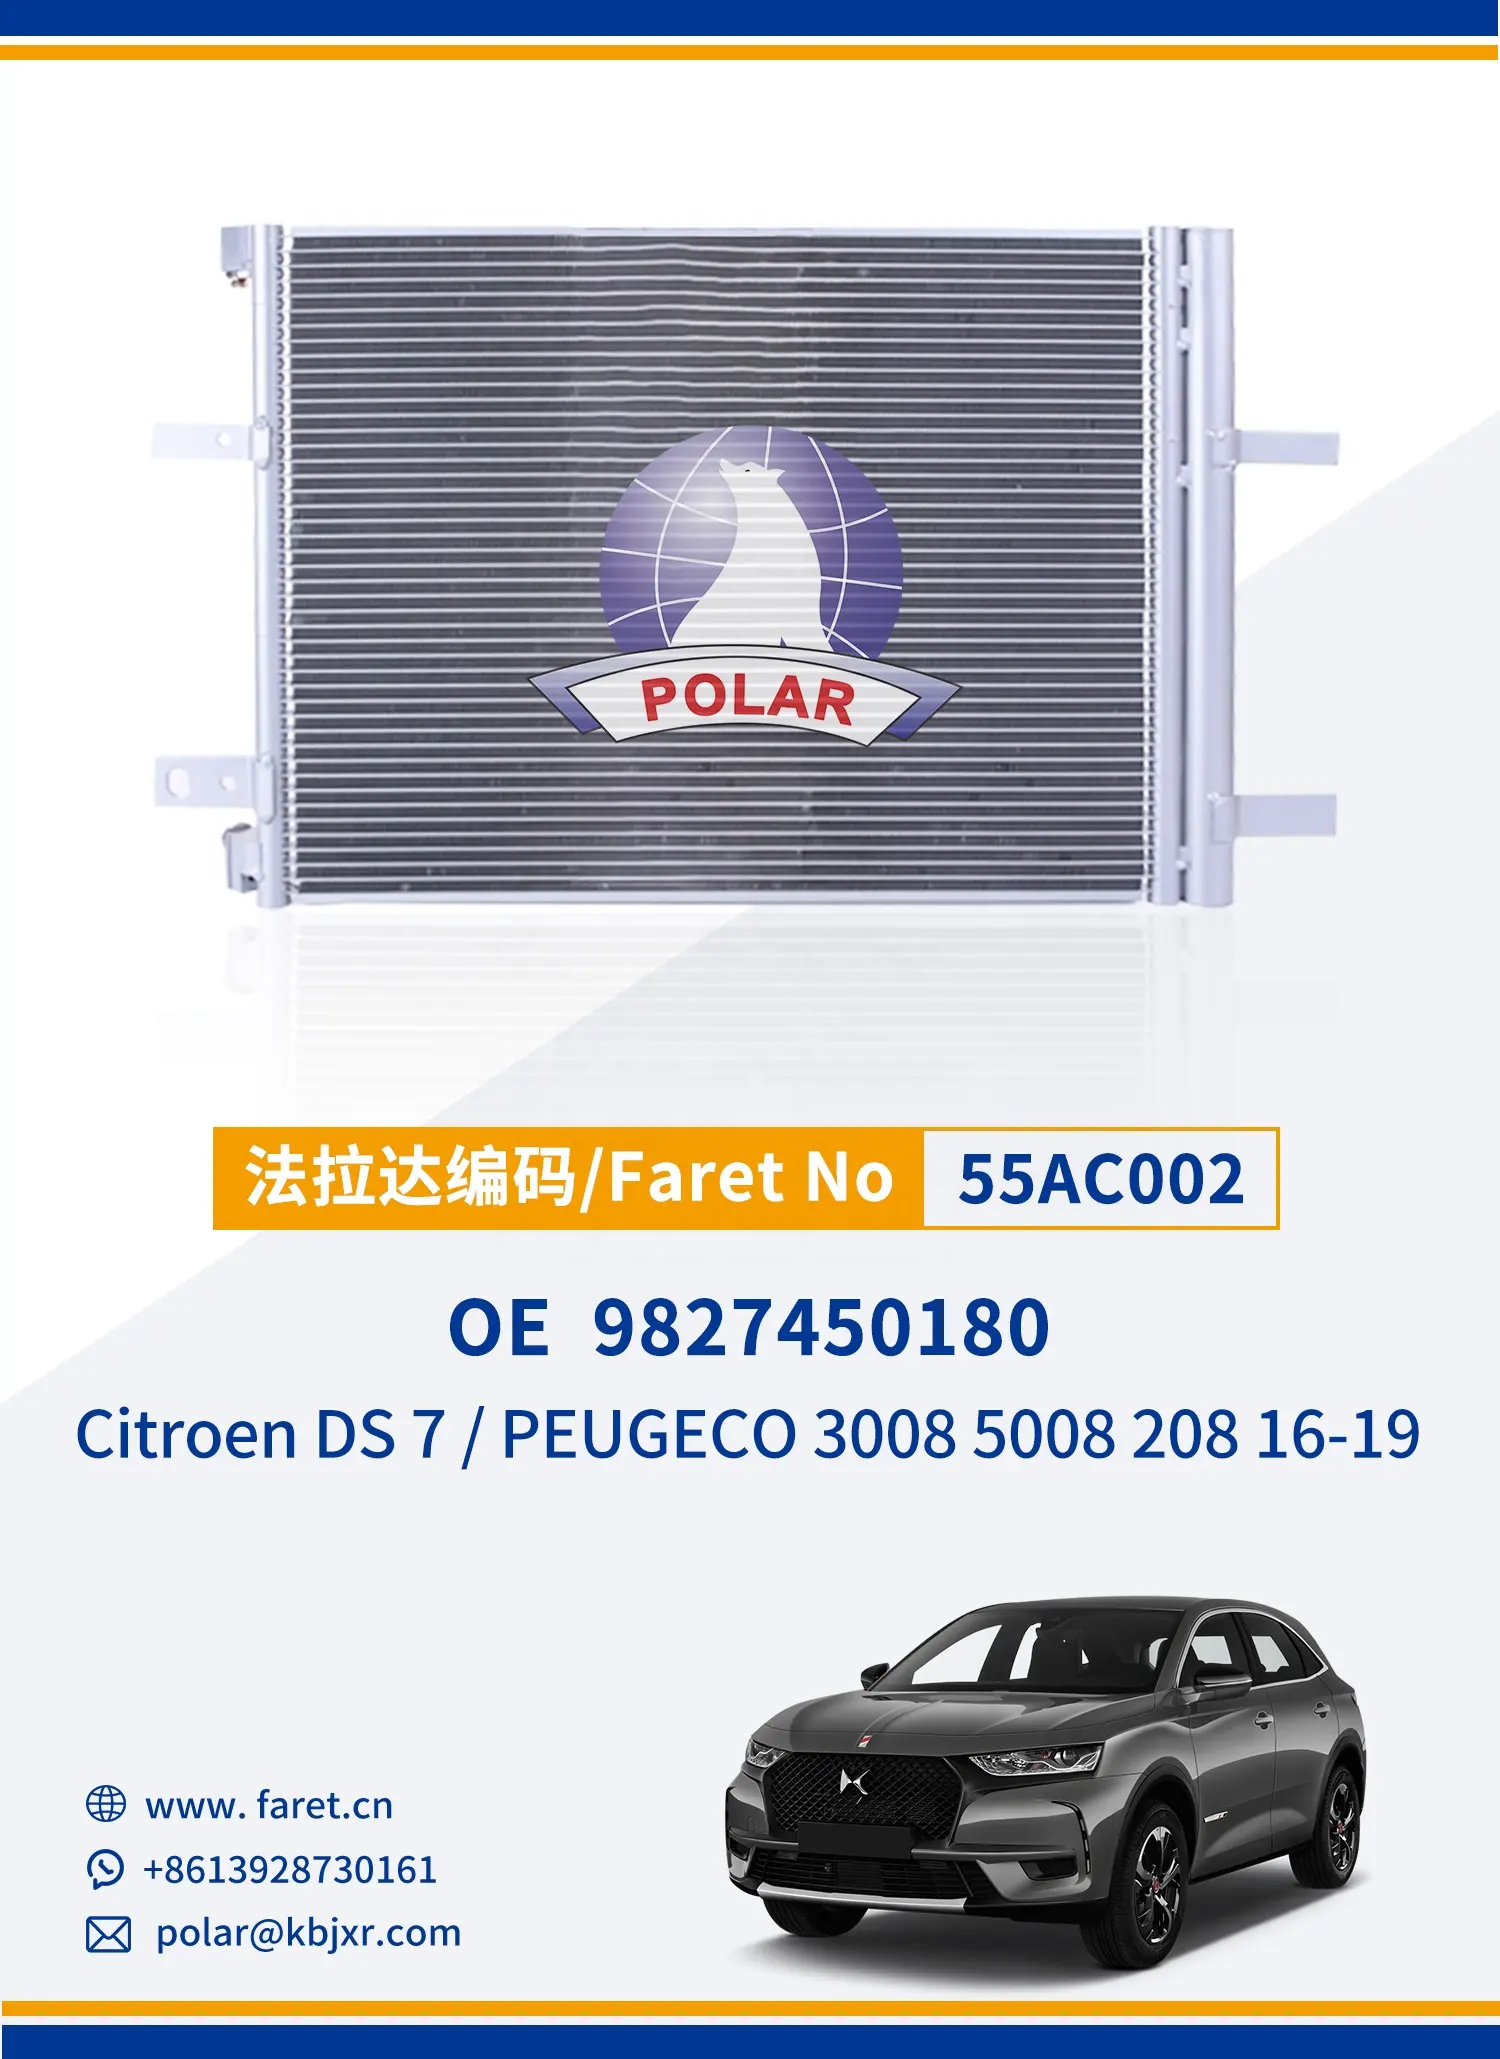 सिट्रोएन DS7/प्यूज़ो 3008 5008 208 16-19 OEM 98274501080 ऑटो पार्ट्स के लिए शीर्ष आपूर्तिकर्ता 55AC002 कार एसी कंडेनसर